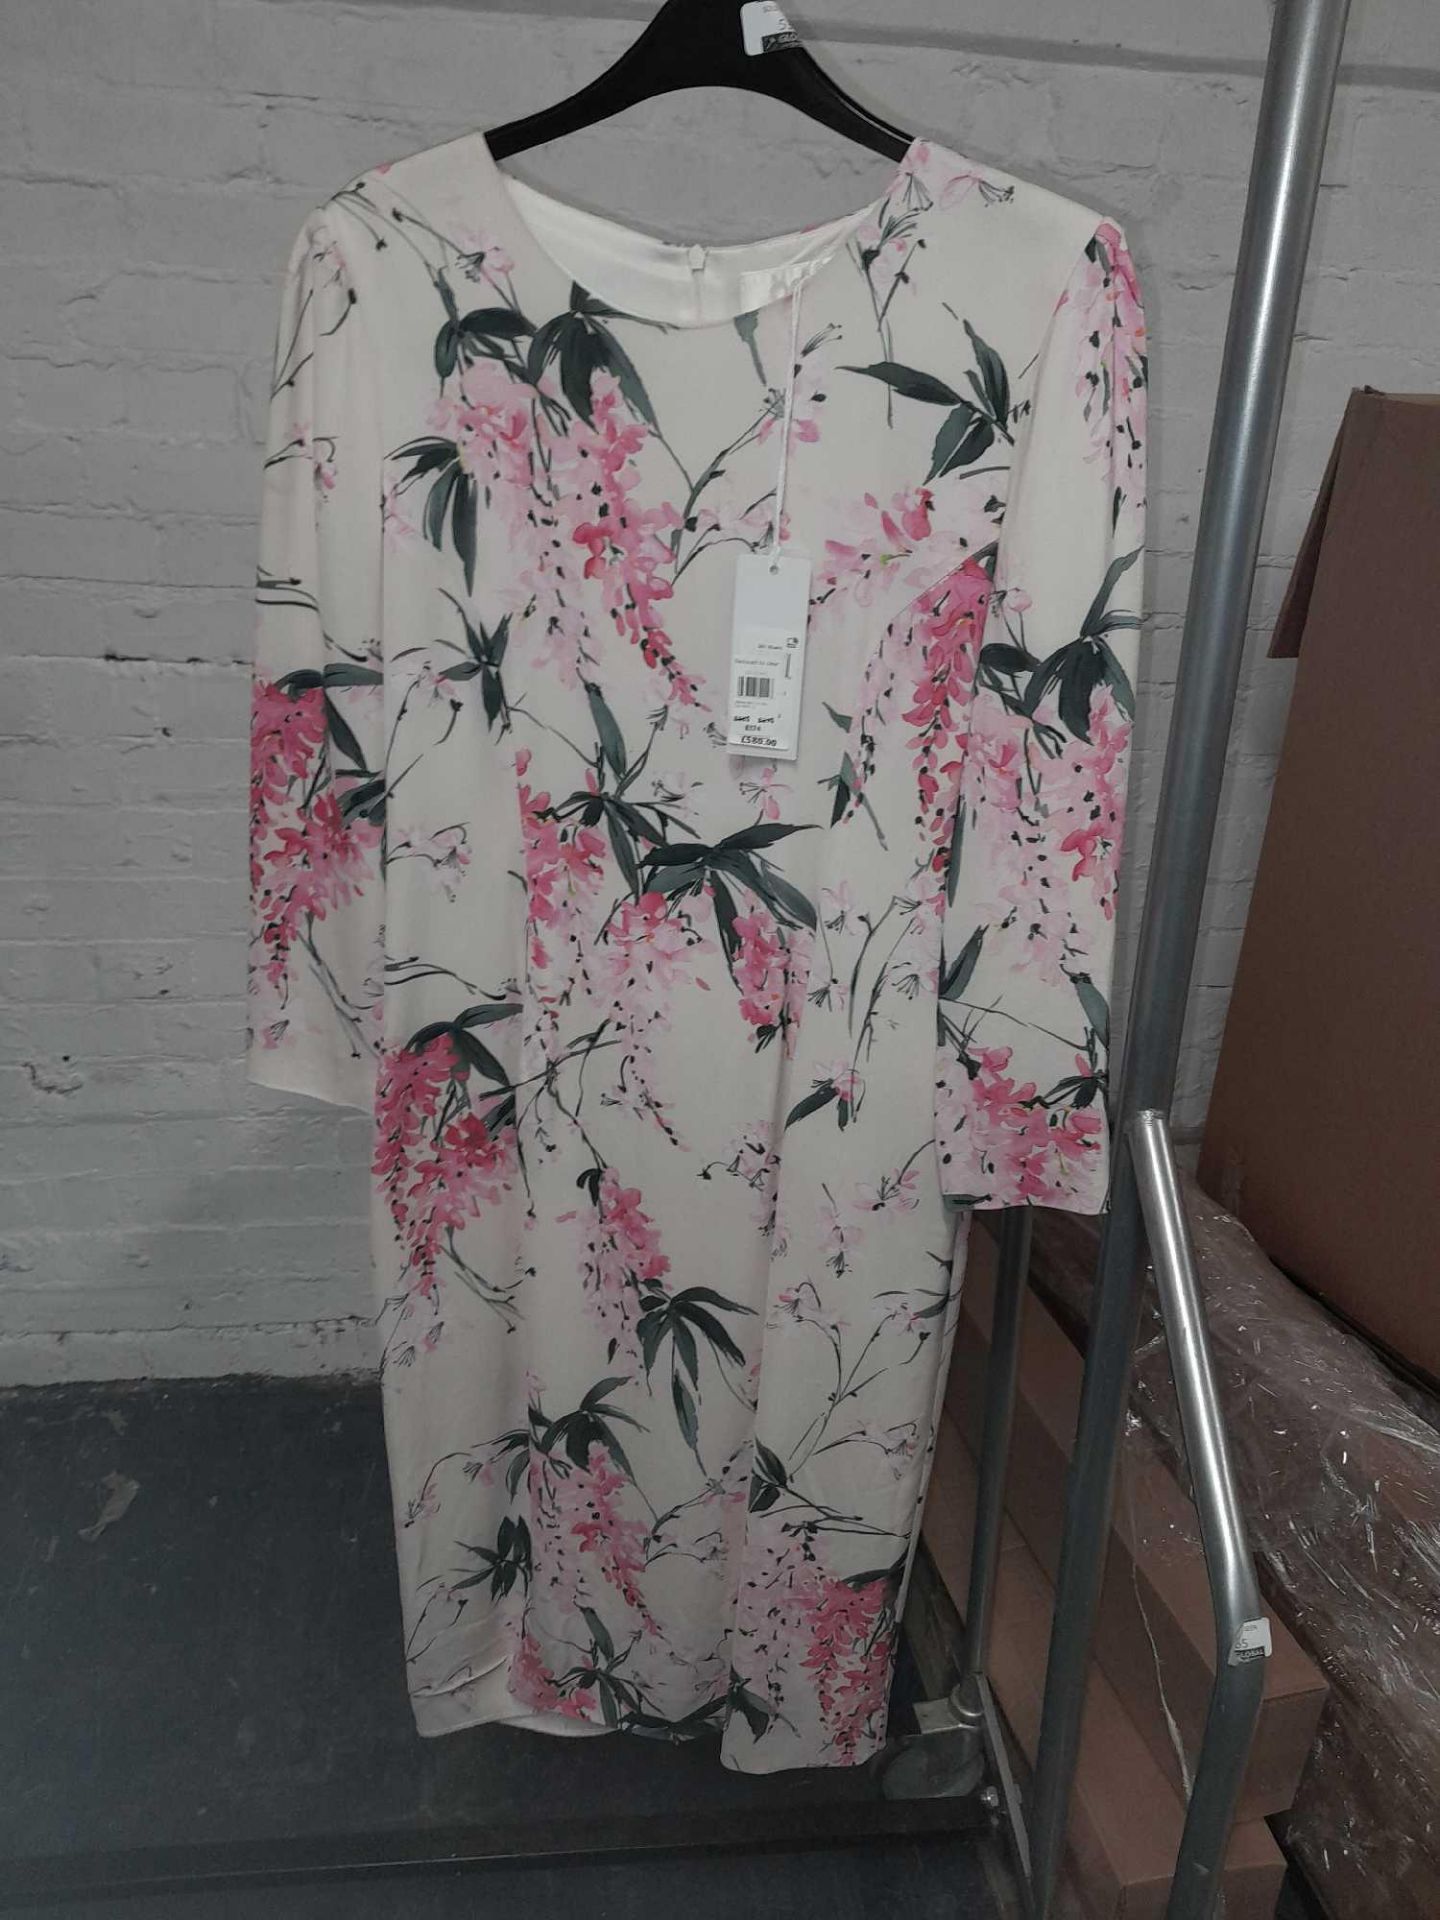 RRP £580 - Goat Jenna Knit Floral Dress Size 12 - Image 2 of 2